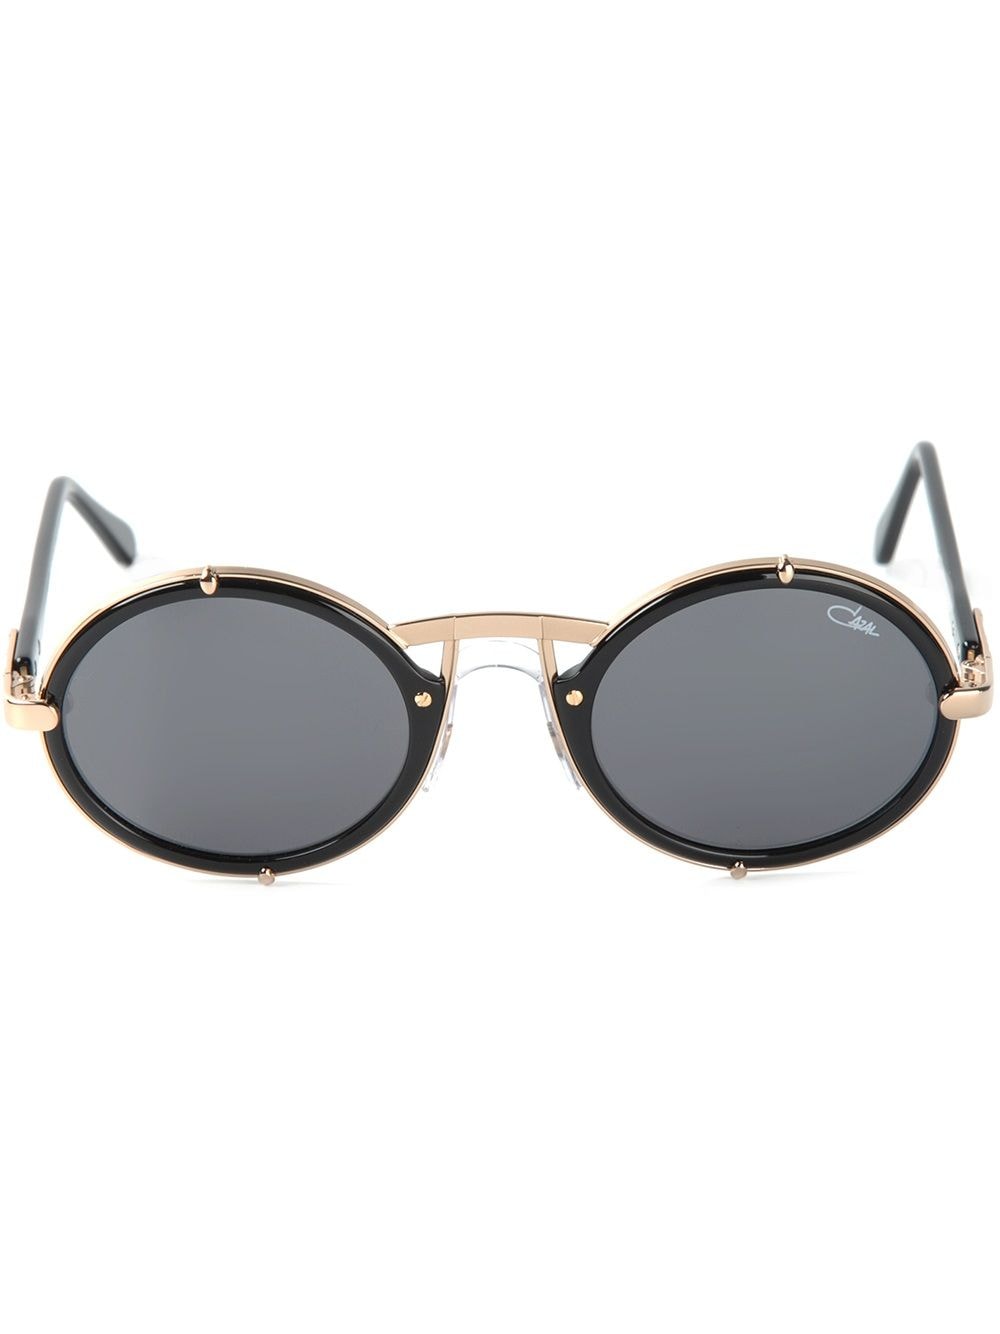 Image 1 of Cazal round frame sunglasses